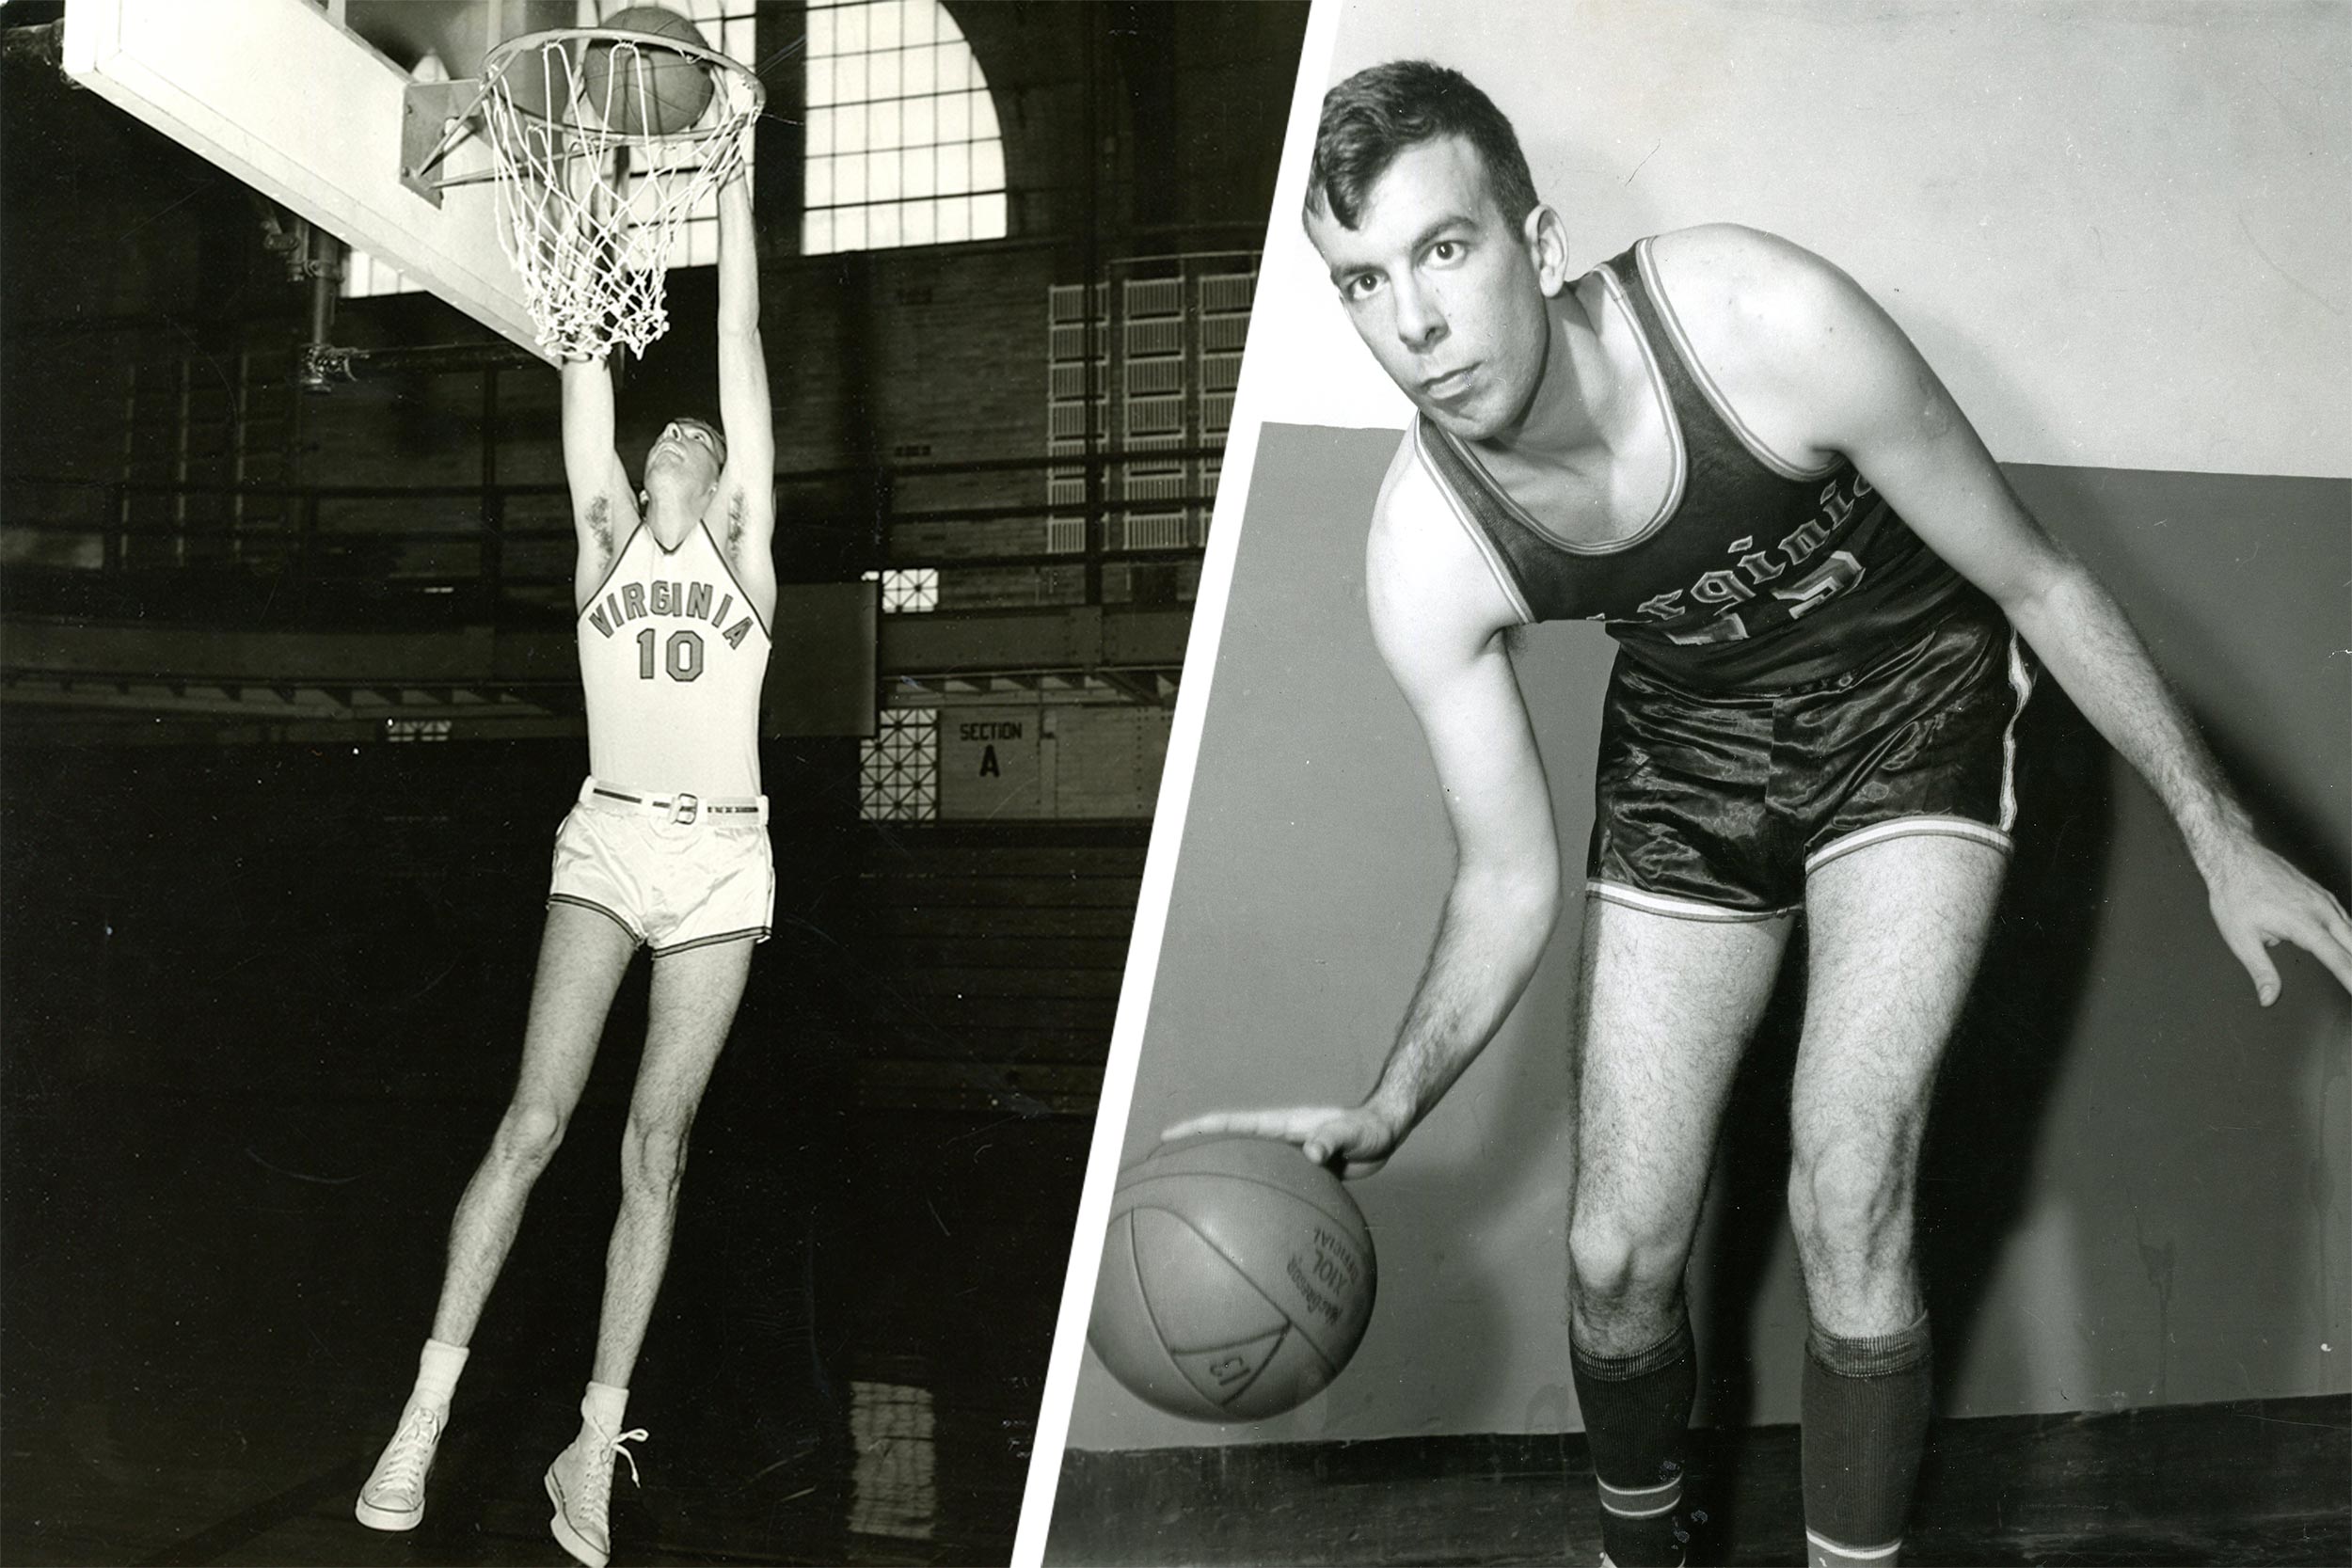 Left: Ben Mortell dunking the basketball. Right: Ben Mortell dribbling the ball